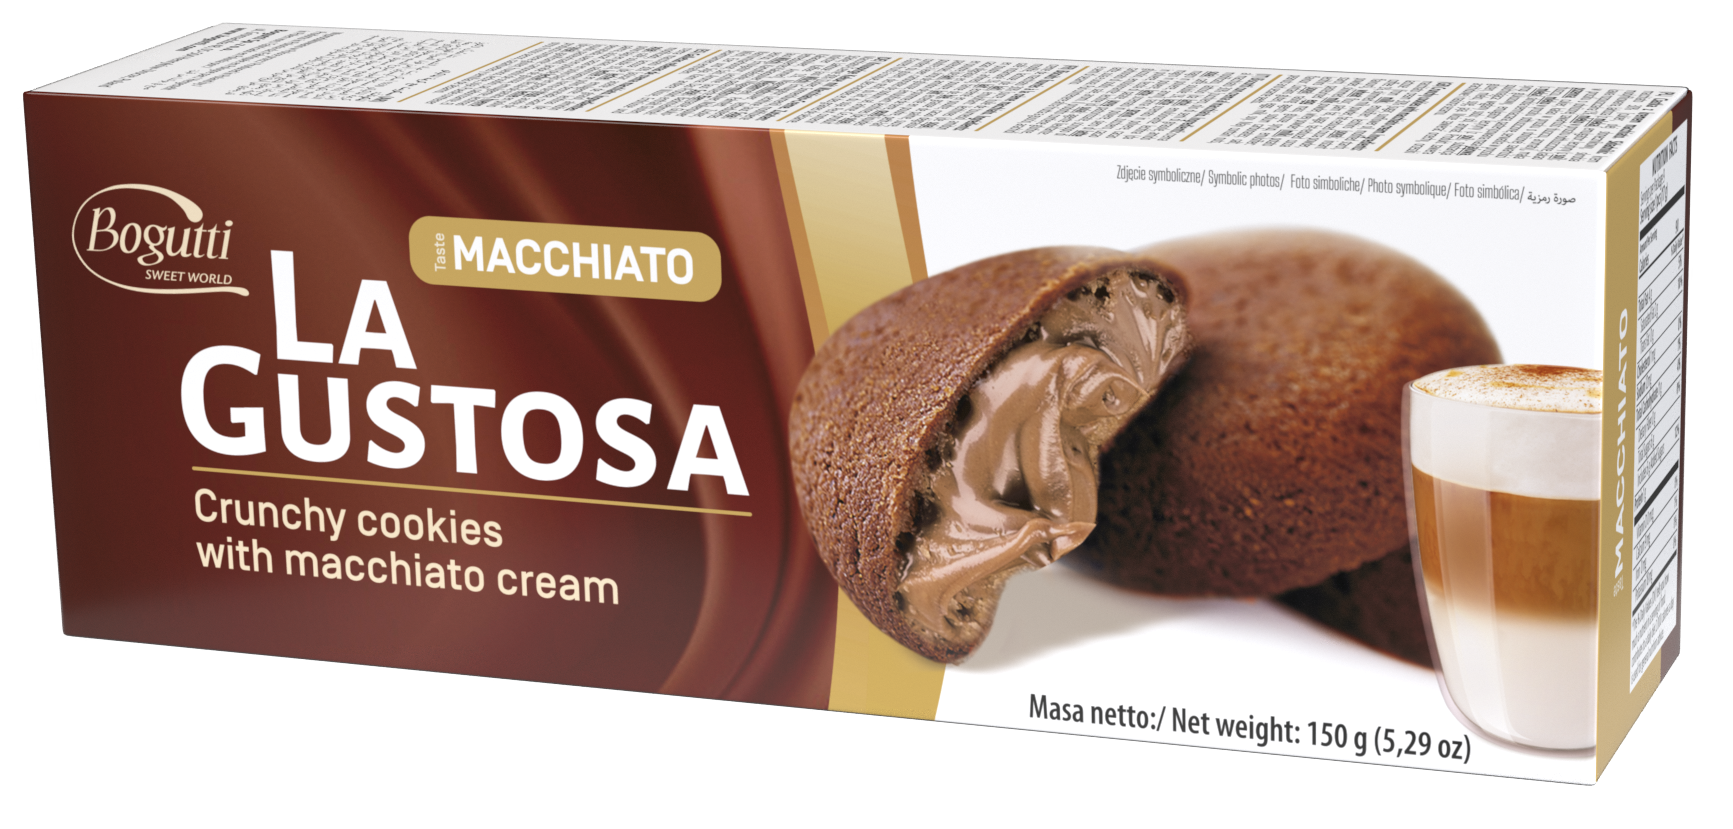 La Gustosa – Kruche ciastka z kremem macchiato